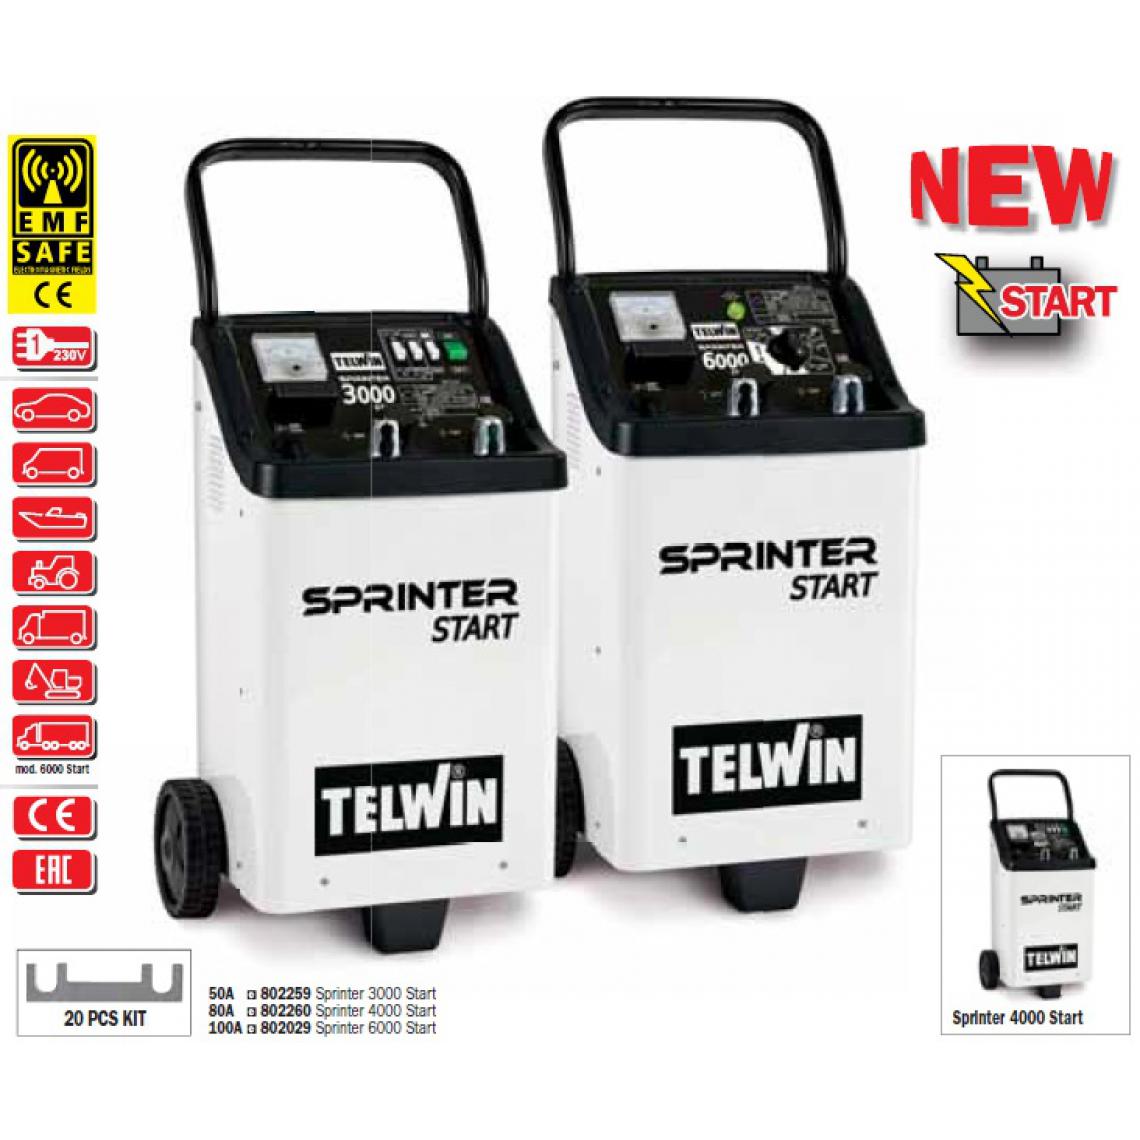 Telwin - Telwin - Chargeur-démarreur de batterie 230V 2-10kW - SPRINTER 6000 START - Consommables pour outillage motorisé